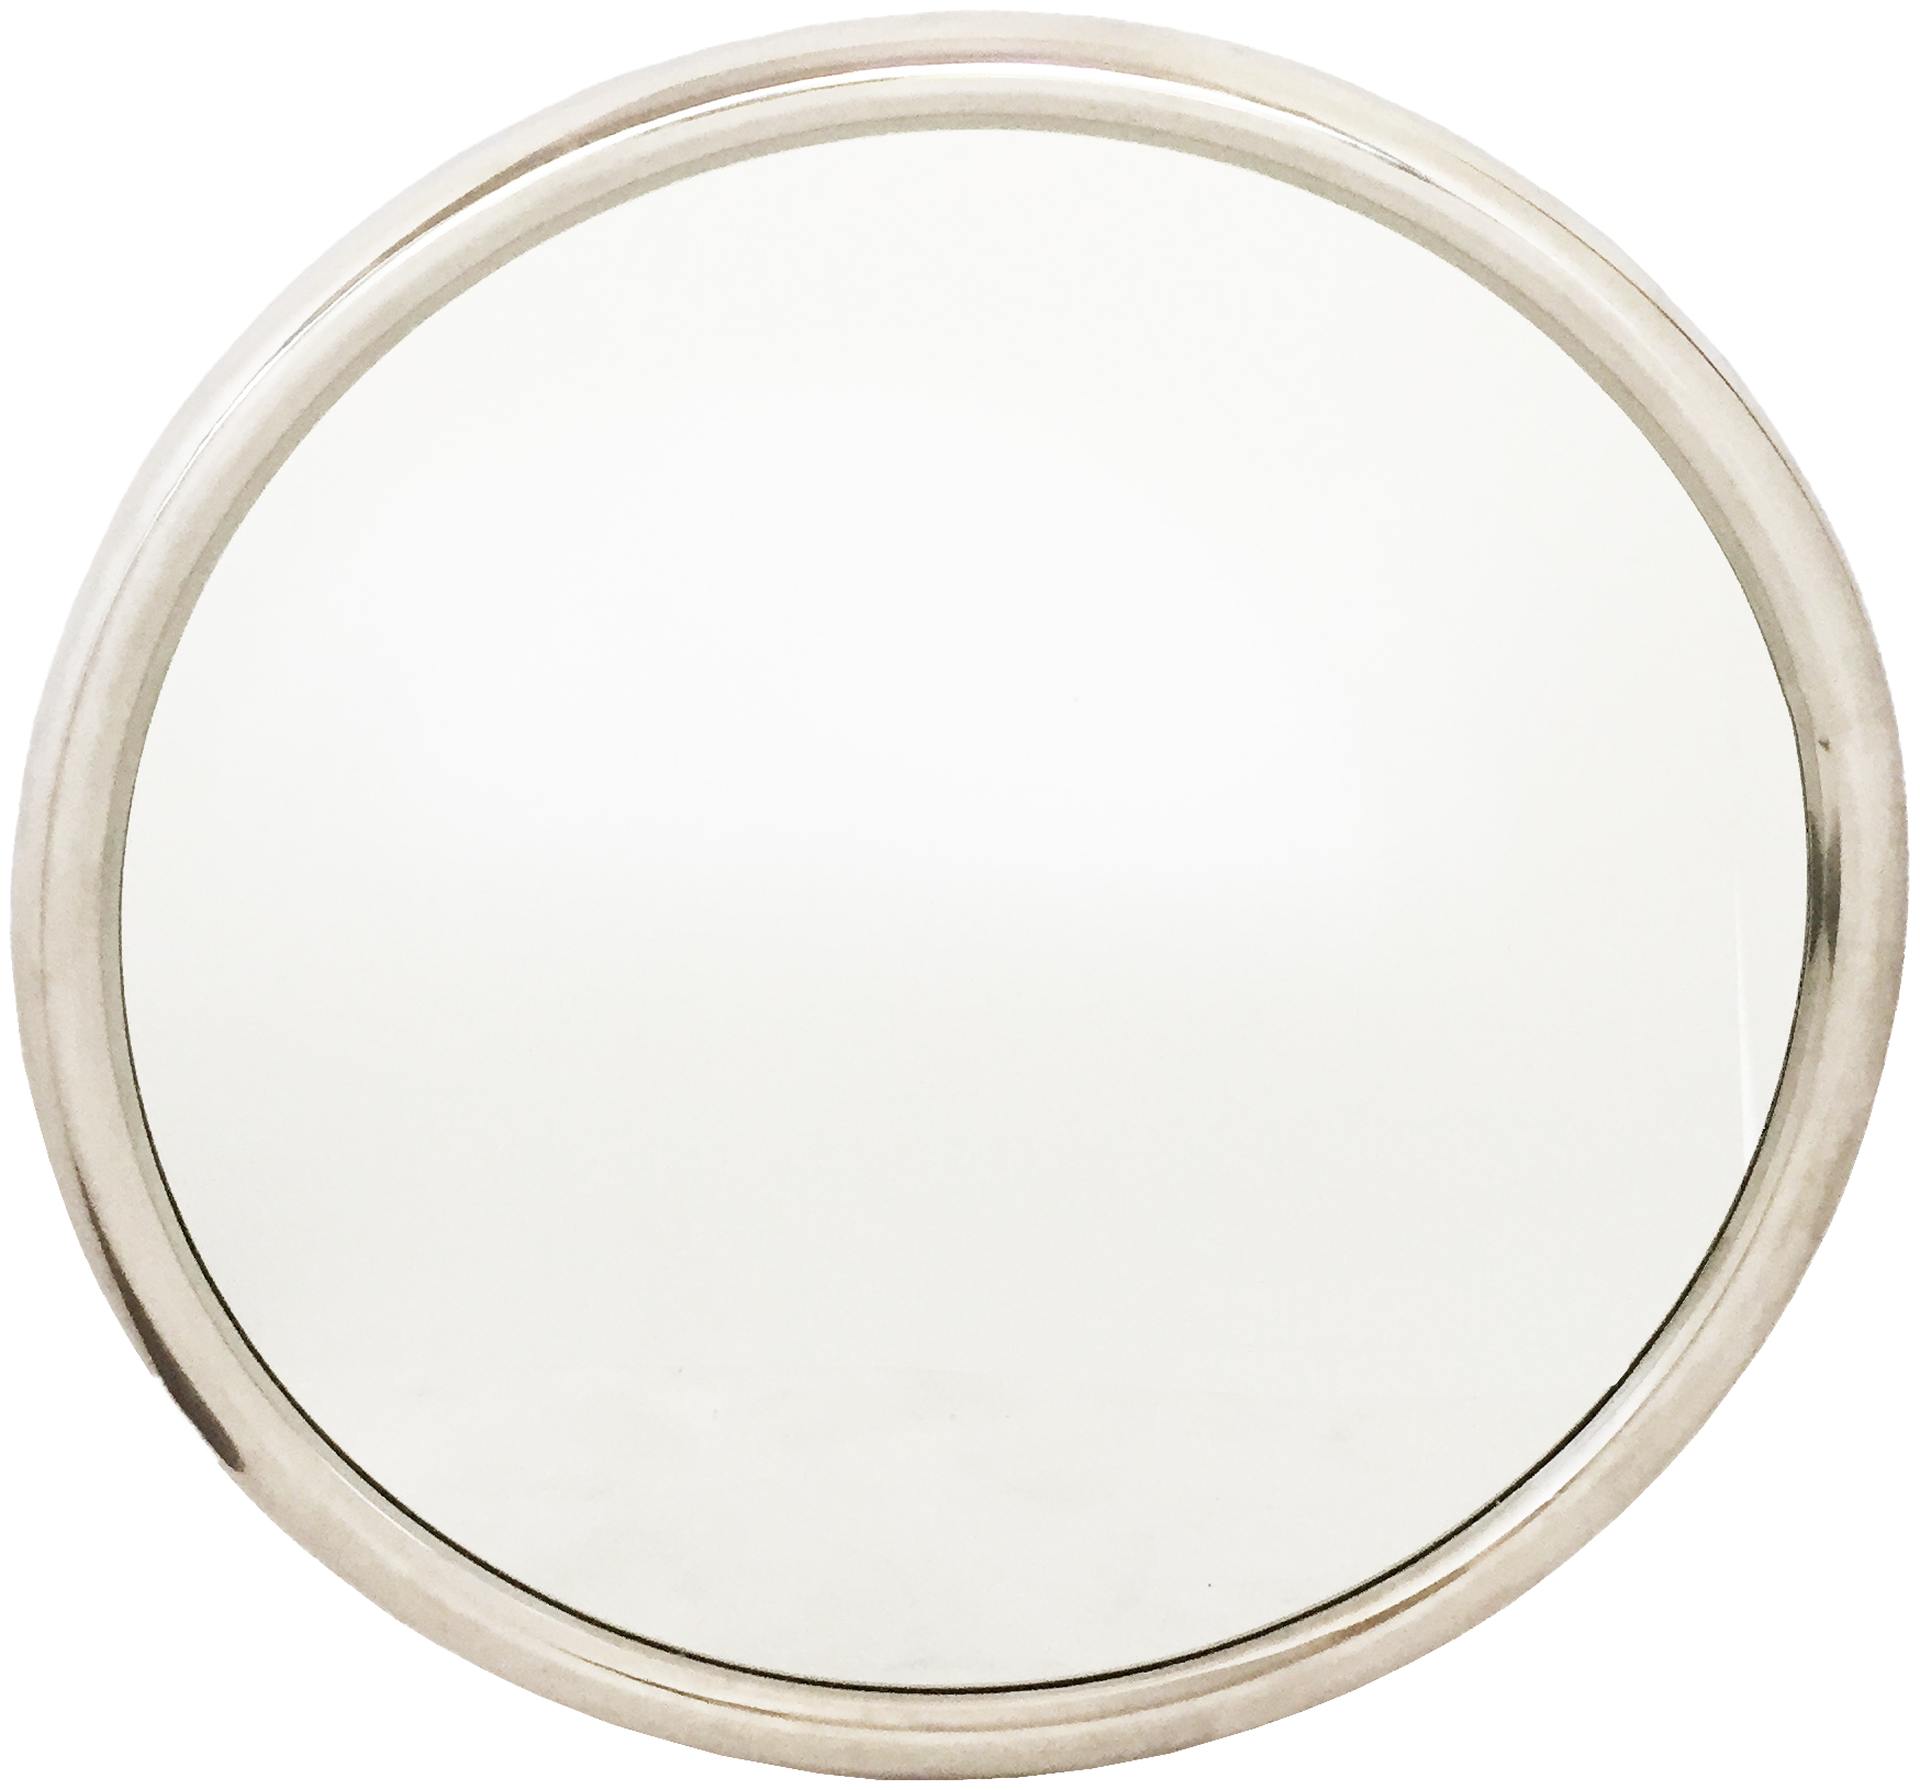 Runder Spiegel 80 cm Durchmesser